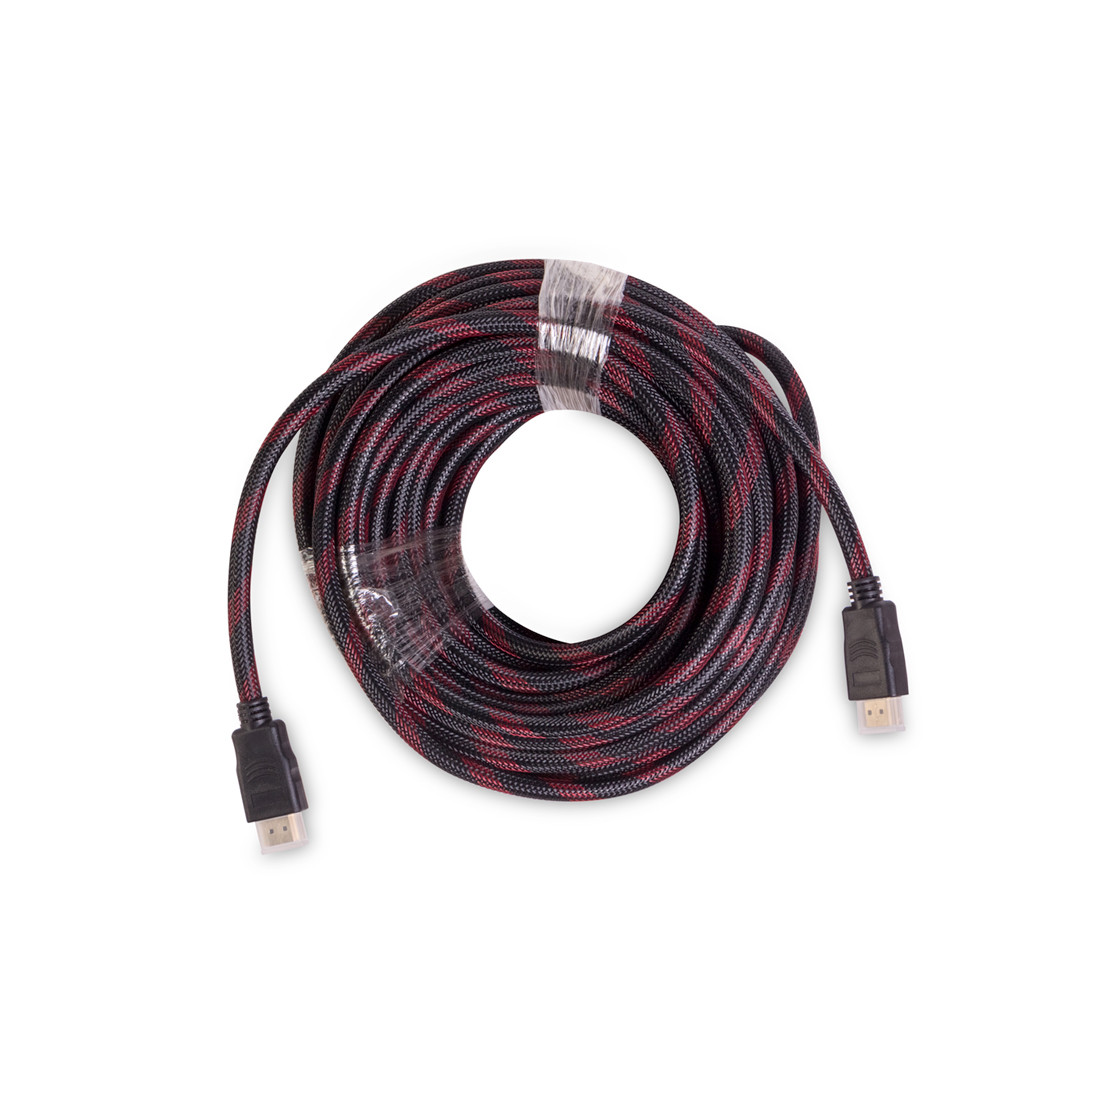 Интерфейсный кабель  iPower  iPiHDMi200  HDMI-HDMI  Пол. пакет  Контакты с золотым напылением  20 м  Нейлон